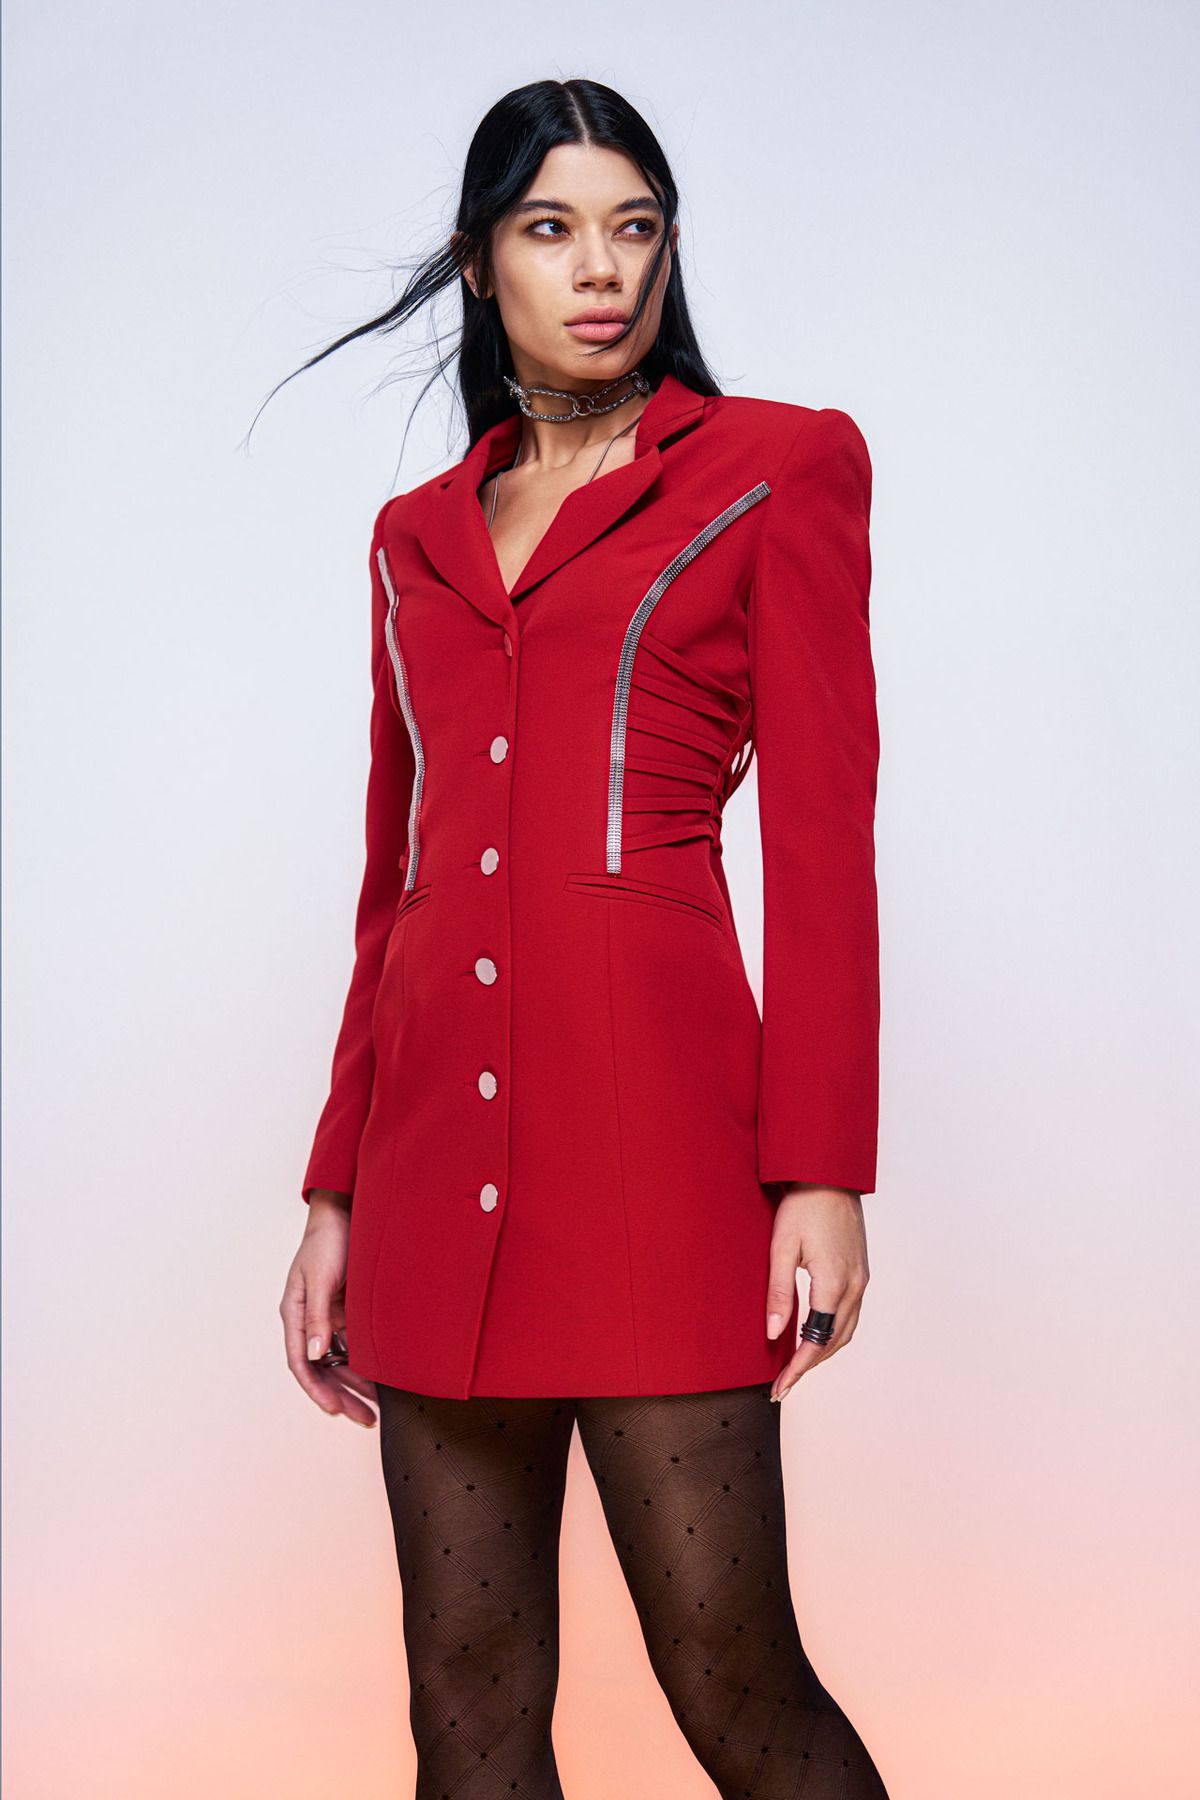 TUBA ERGIN Kadın Kırmızı Zincir Detaylı Darel Ceket Elbise